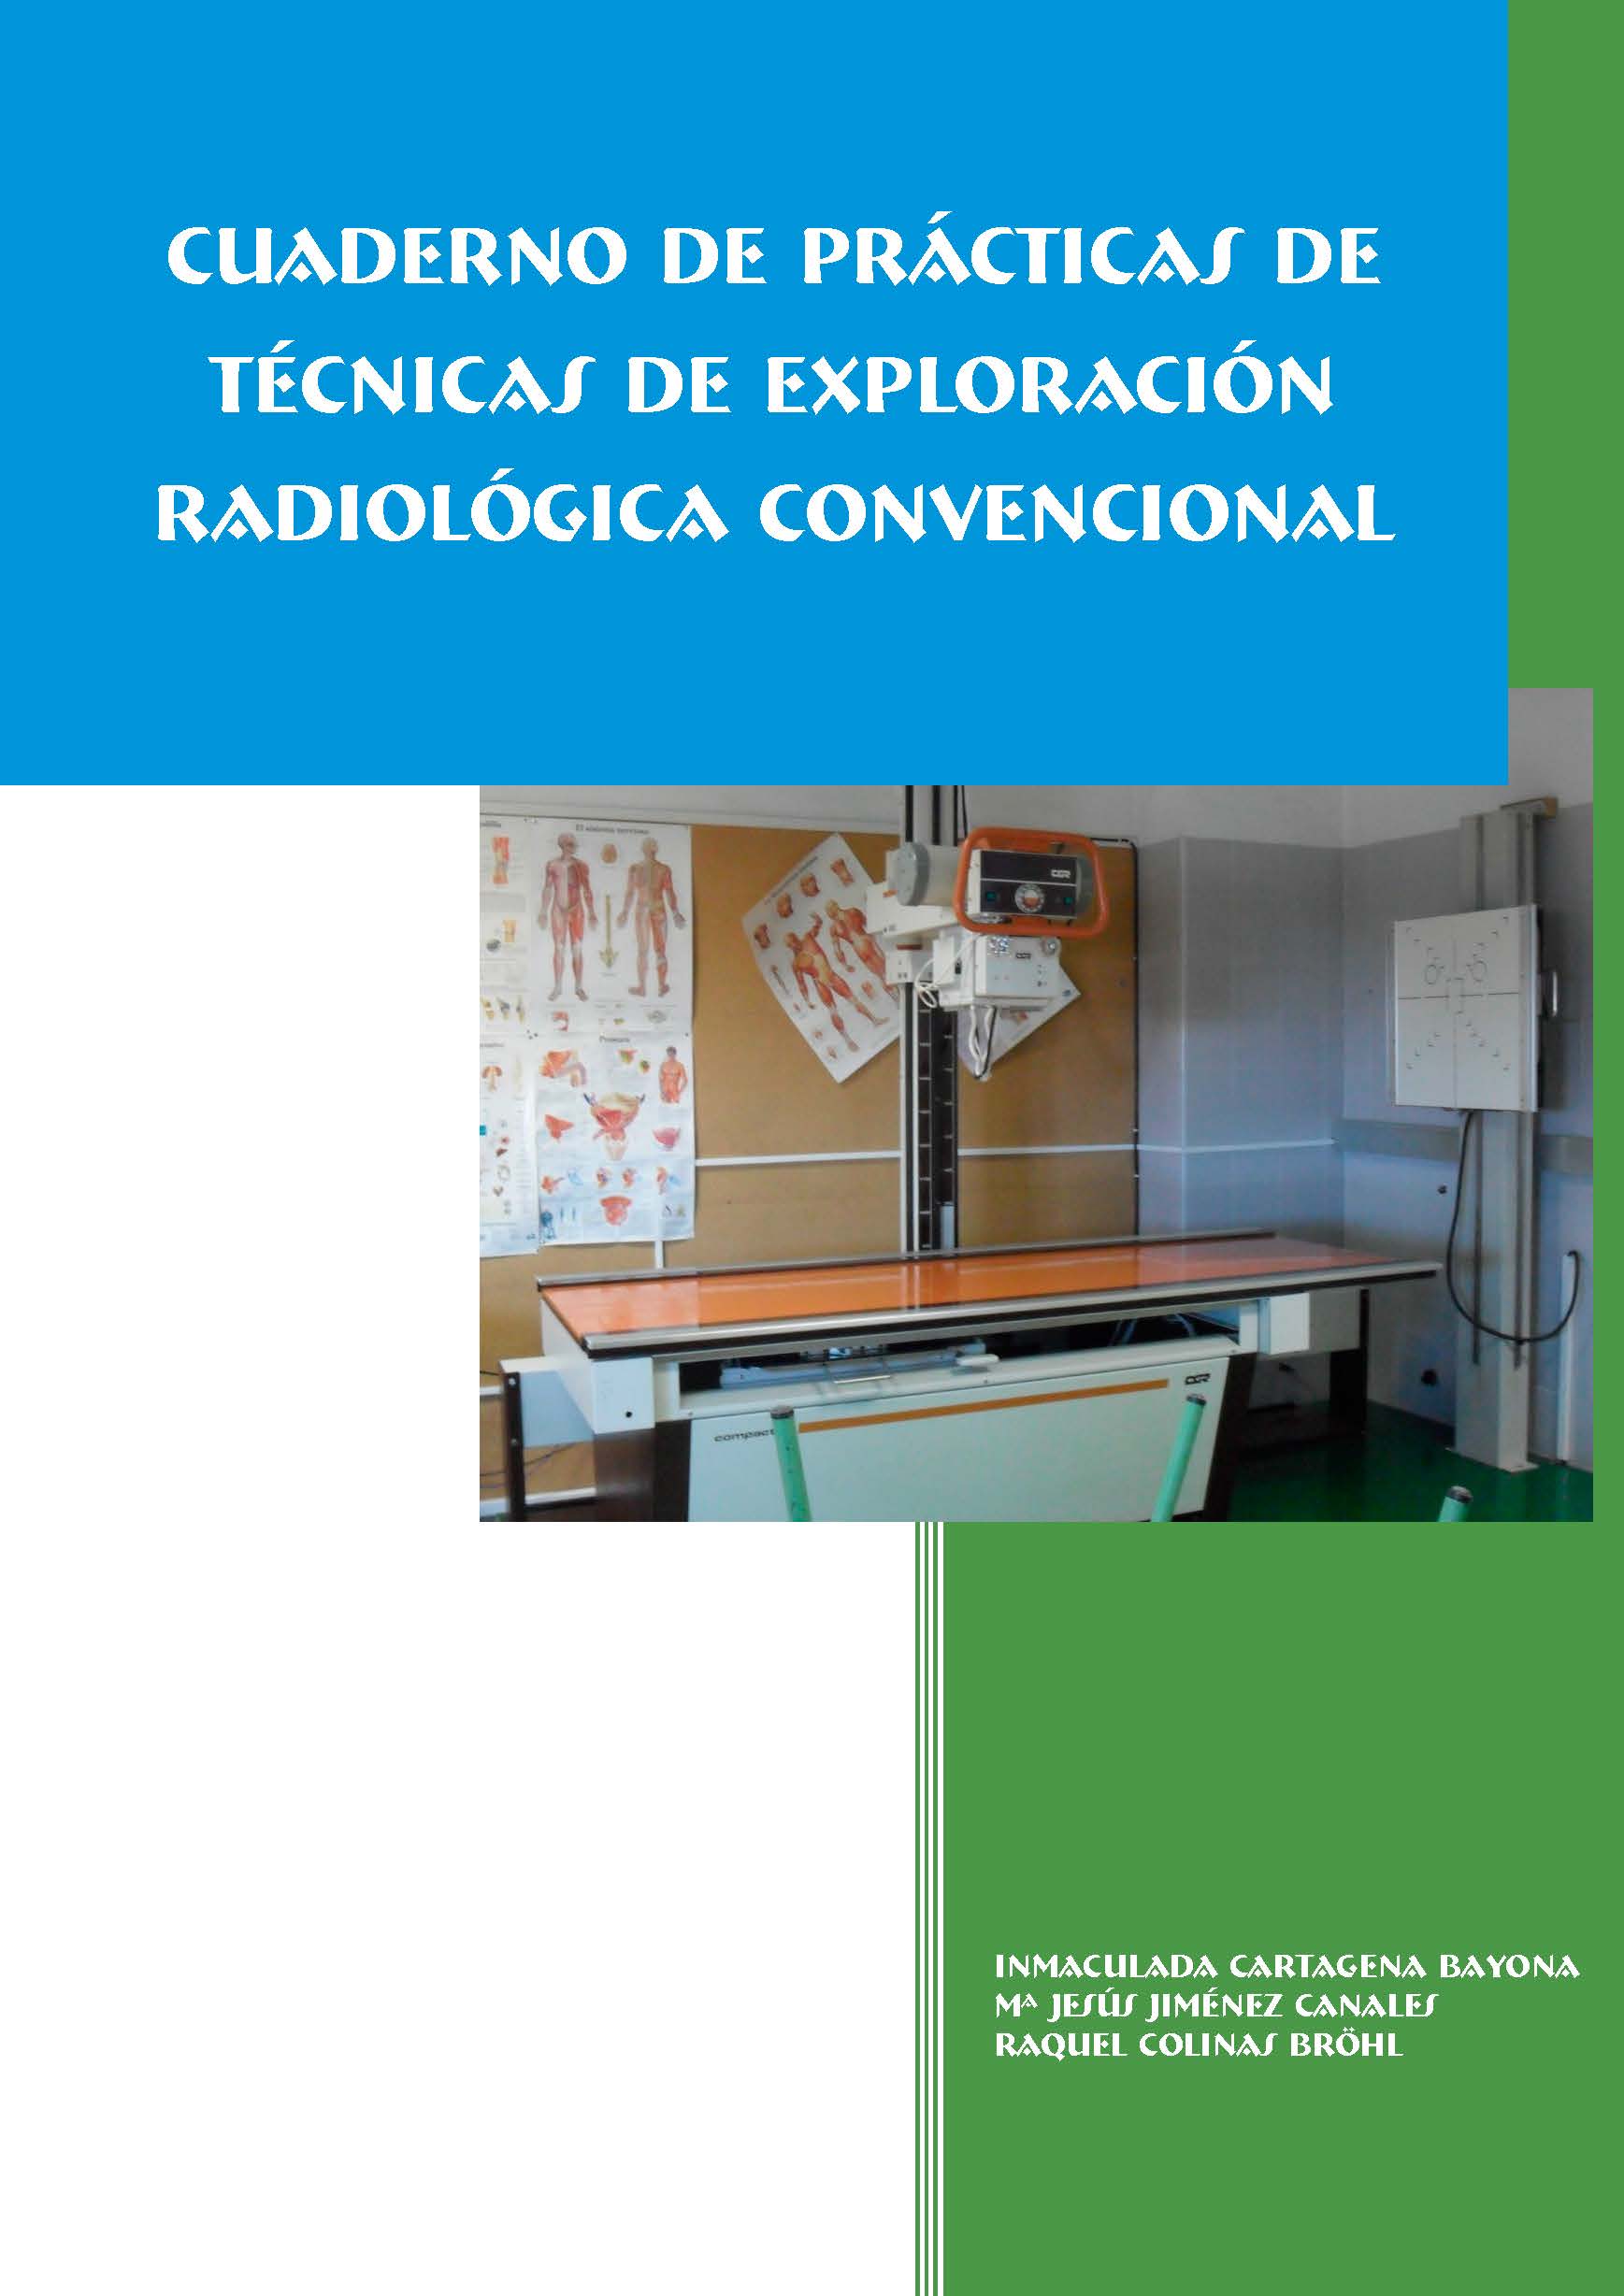 Cuaderno de prácticas de técnicas de exploración radiológica convencional